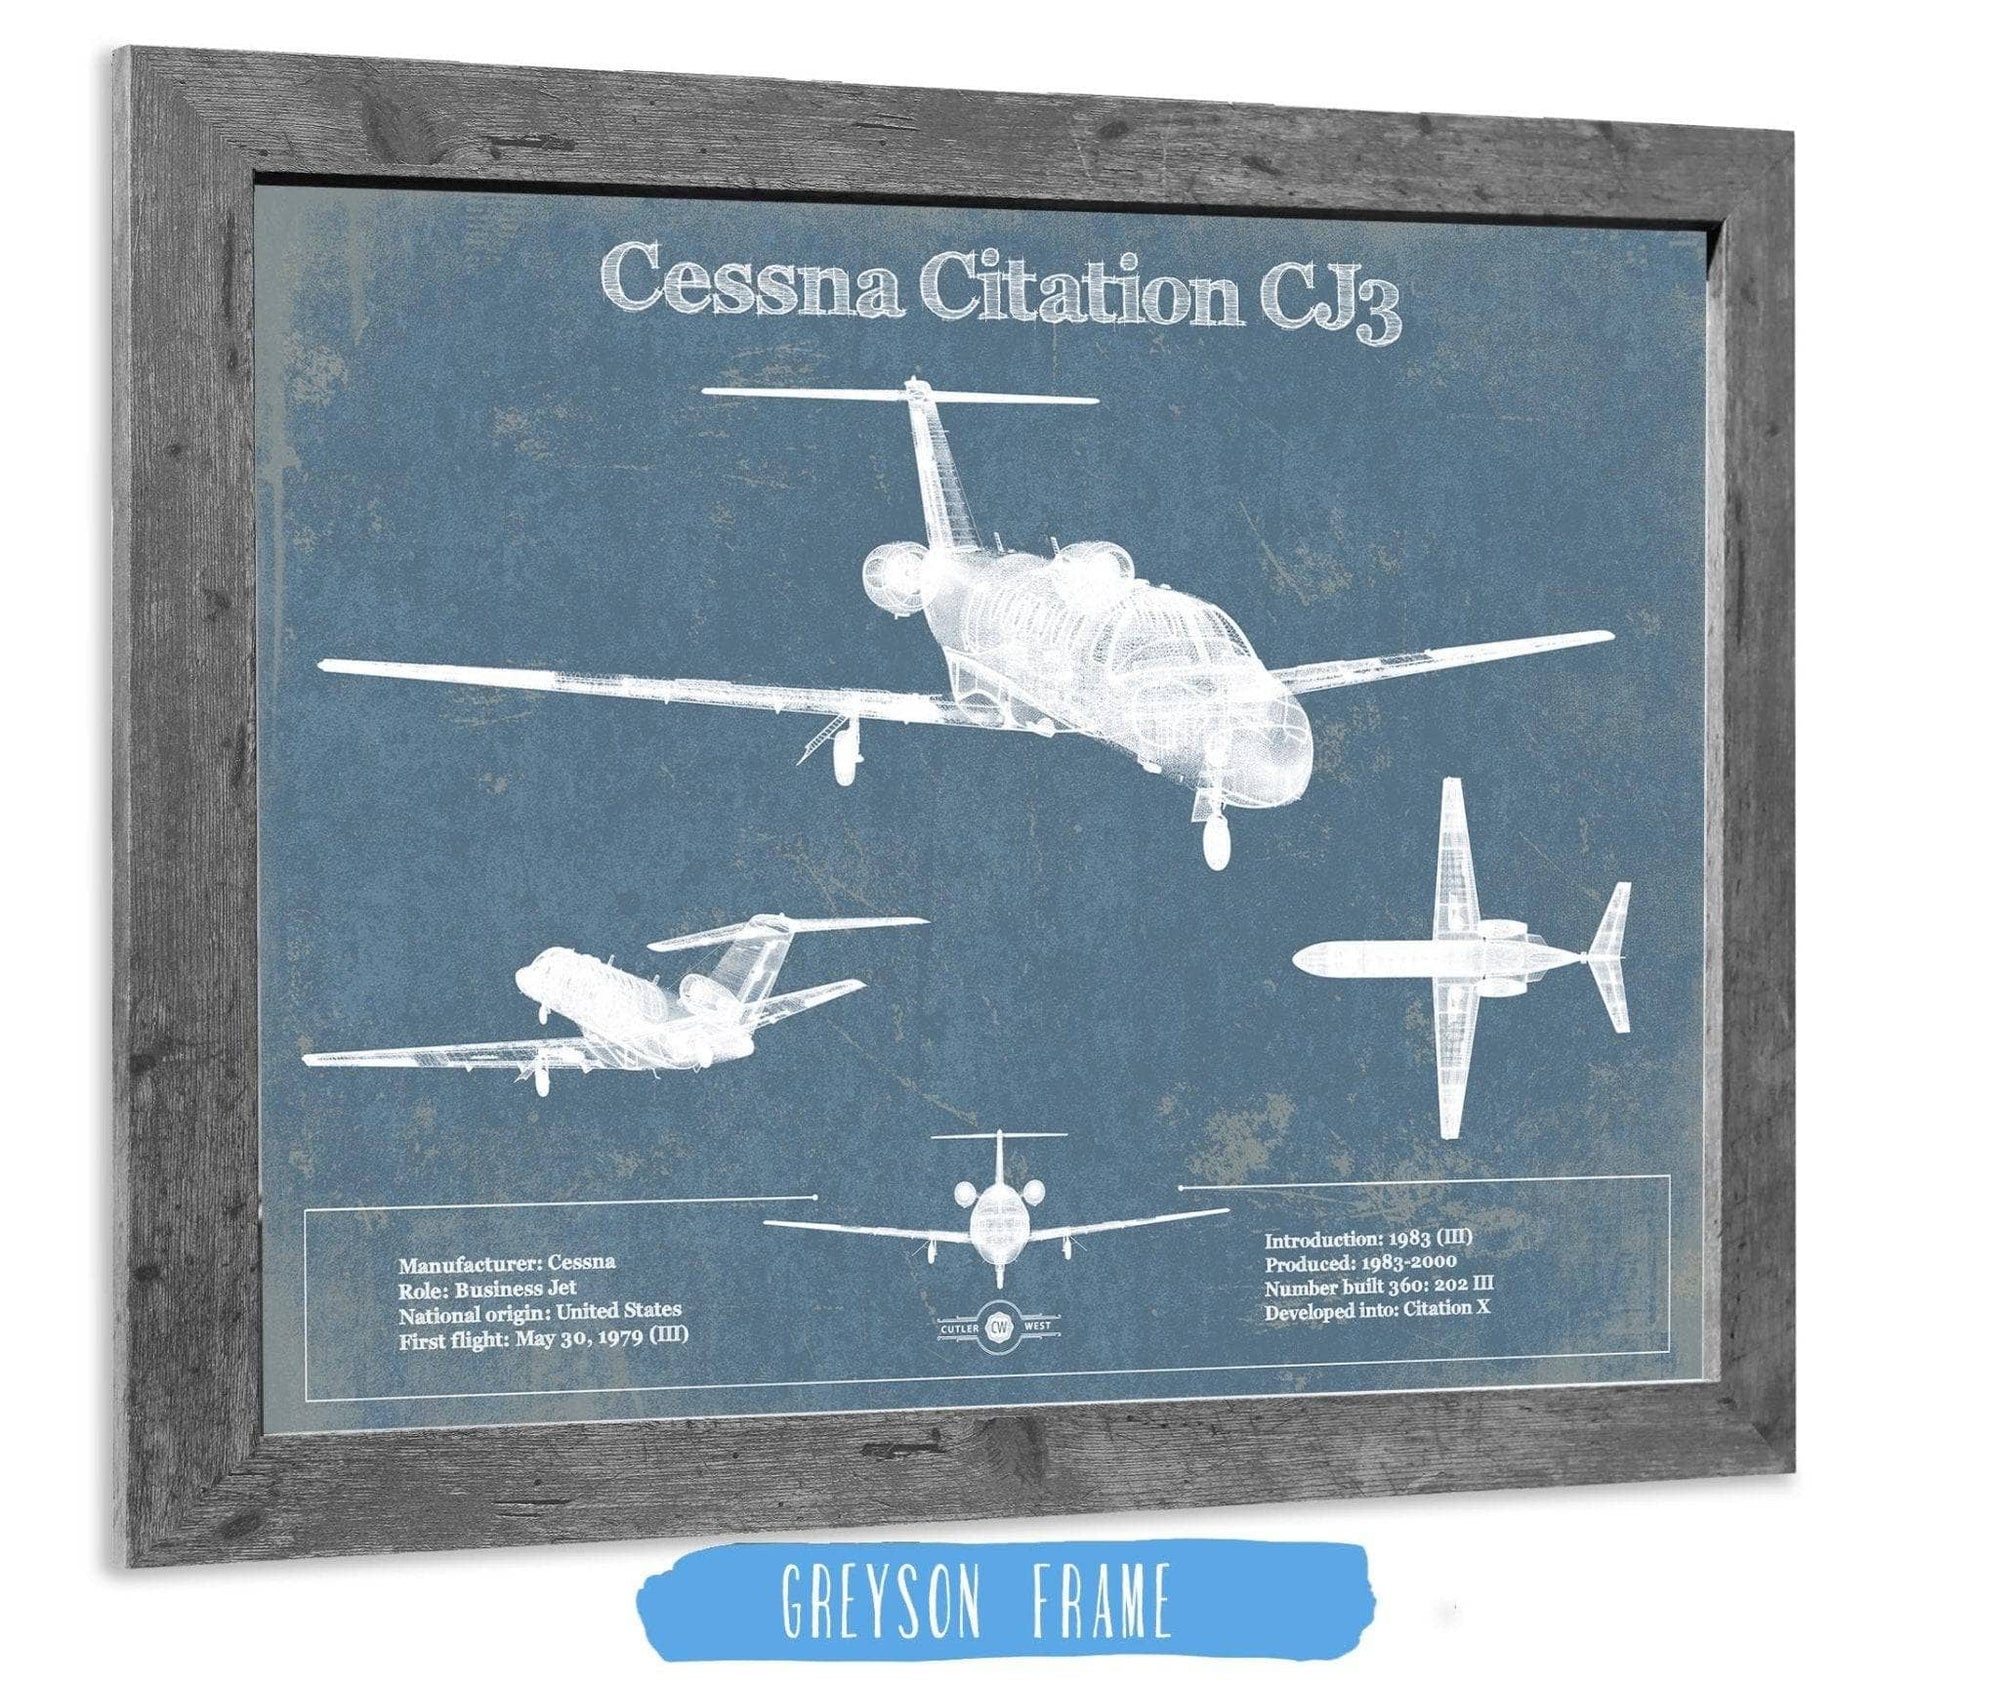 Cutler West Cessna Collection 14" x 11" / Greyson Frame Cessna Citation CJ3 Original Blueprint Art 845000290_49932